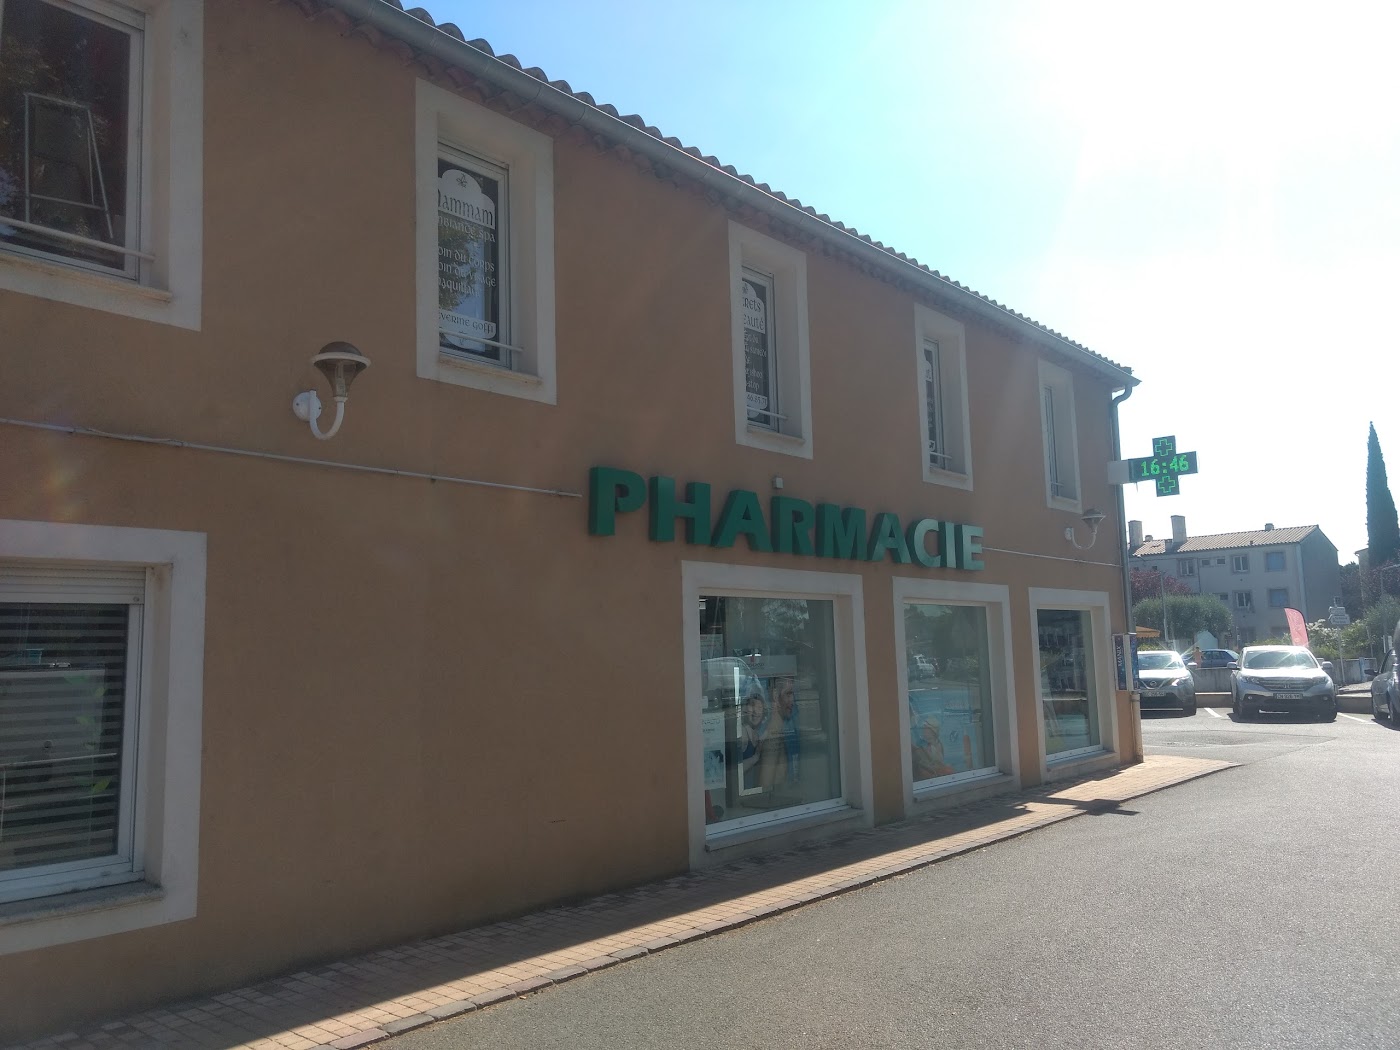 Pharmacie des Voconces